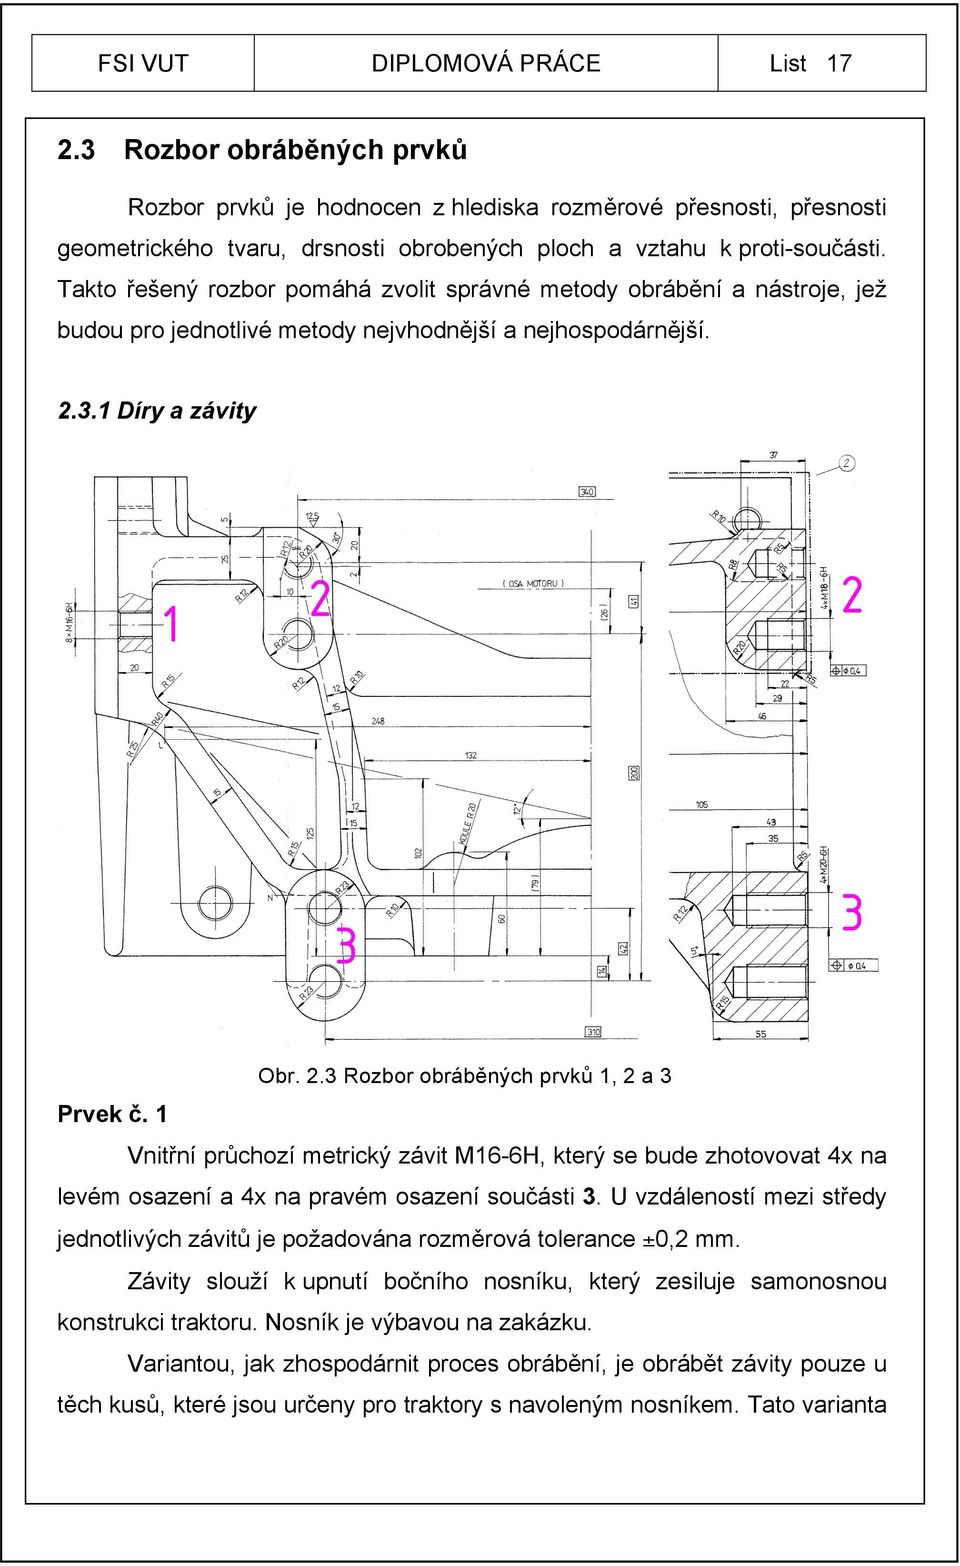 1 Vnitřní průchozí metrický závit M16-6H, který se bude zhotovovat 4x na levém osazení a 4x na pravém osazení součásti 3.